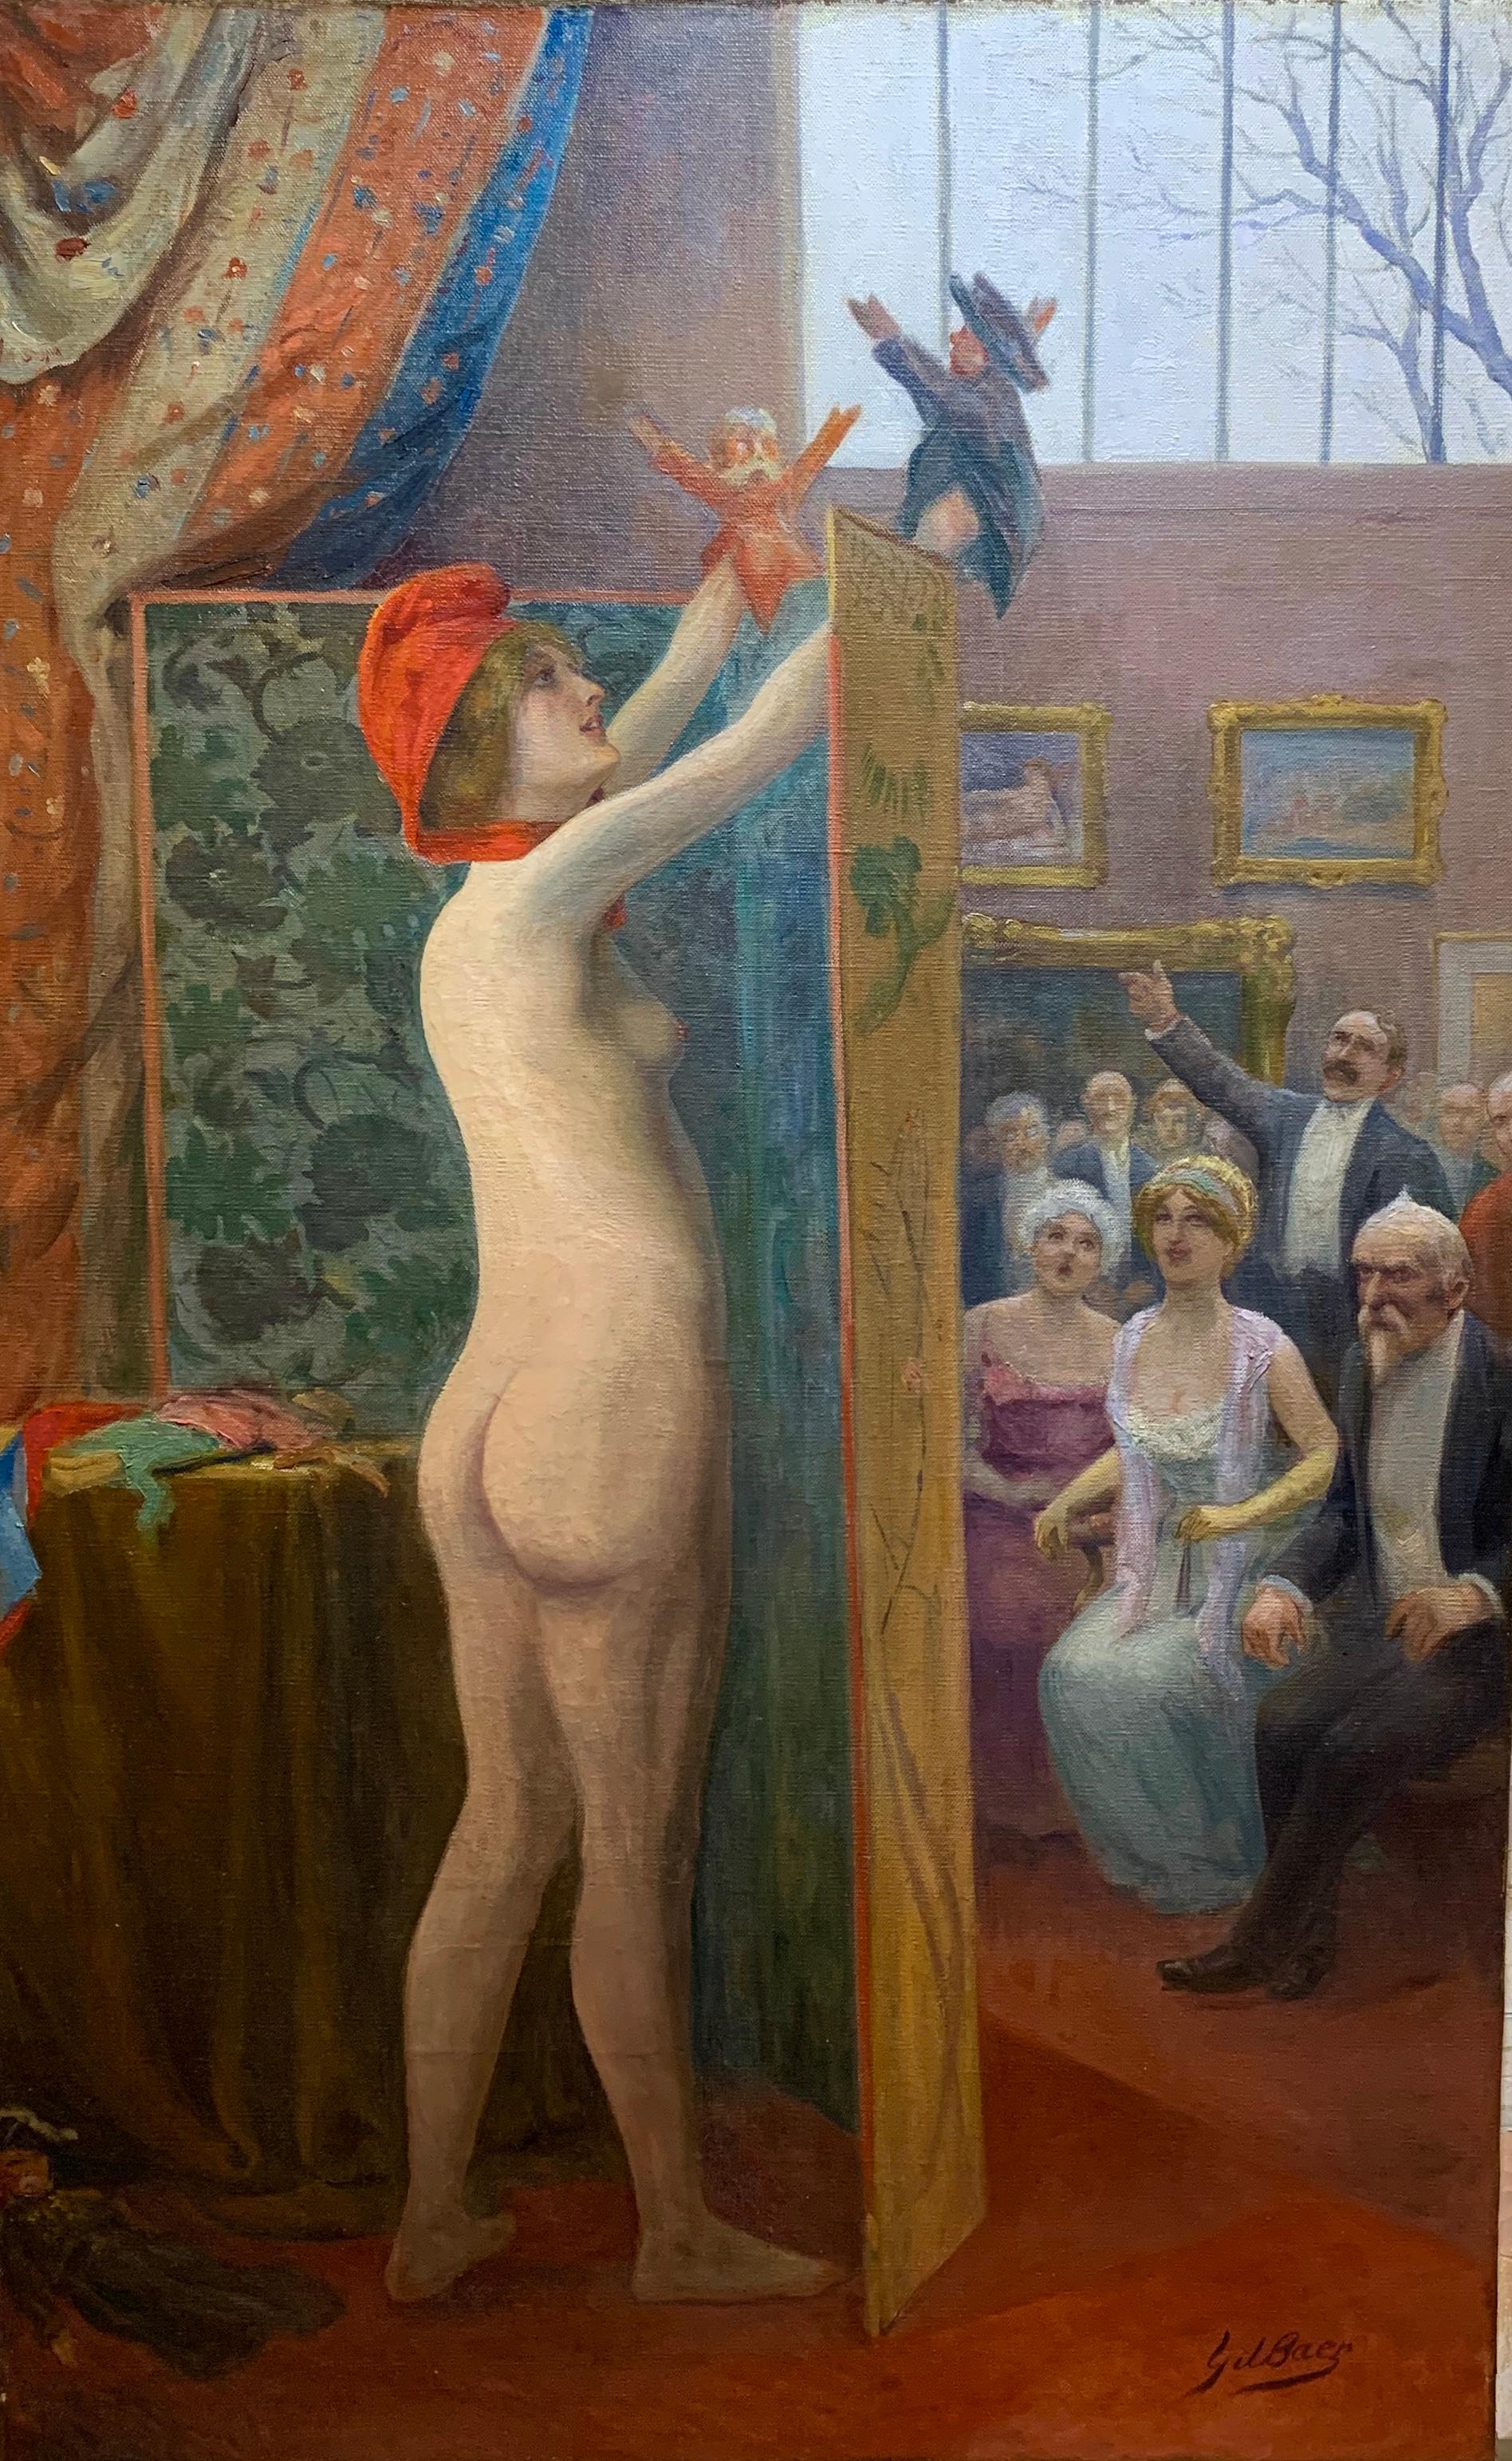 Soo lustig!
Gil Baer (1859-1931) ist der Künstler dieses schönen und humorvollen Gemäldes. Es handelt sich um eine surrealistische Illustration einer nackten Frau hinter einem Paravent, die eine Menschenmenge mit einem Handpuppenspiel unterhält.